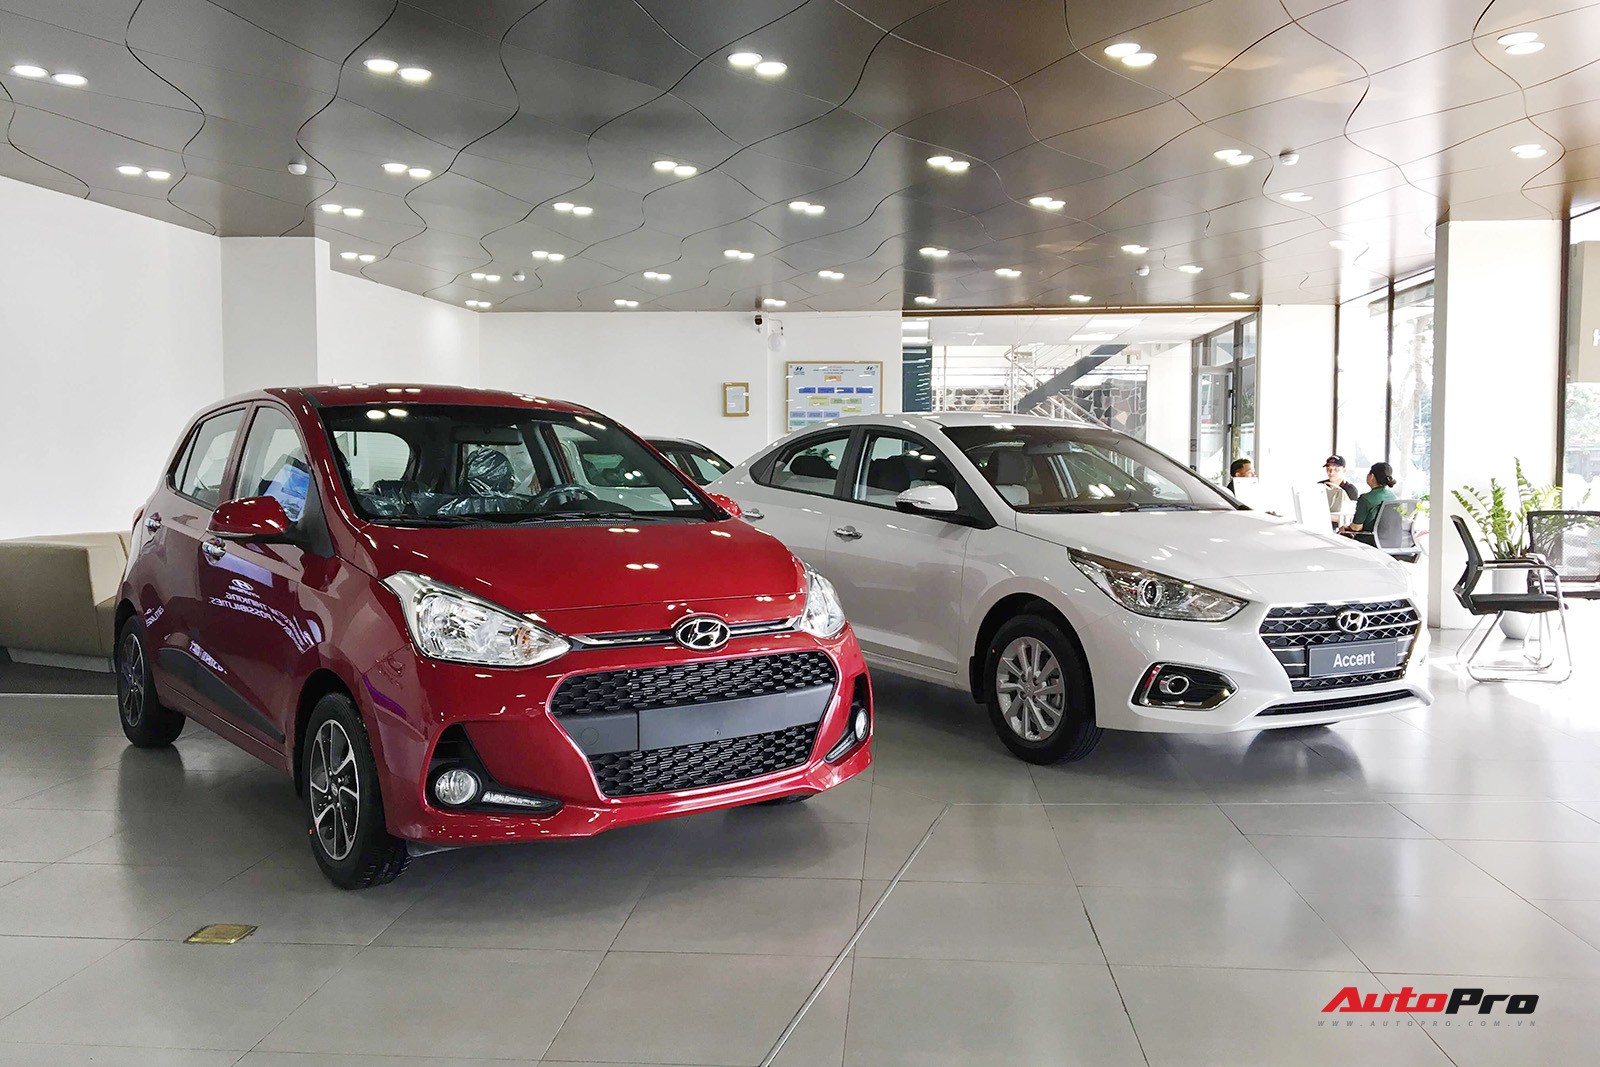 Hyundai nhập hội bảo hành 5 năm cùng VinFast, Peugeot tại Việt Nam - Ảnh 2.